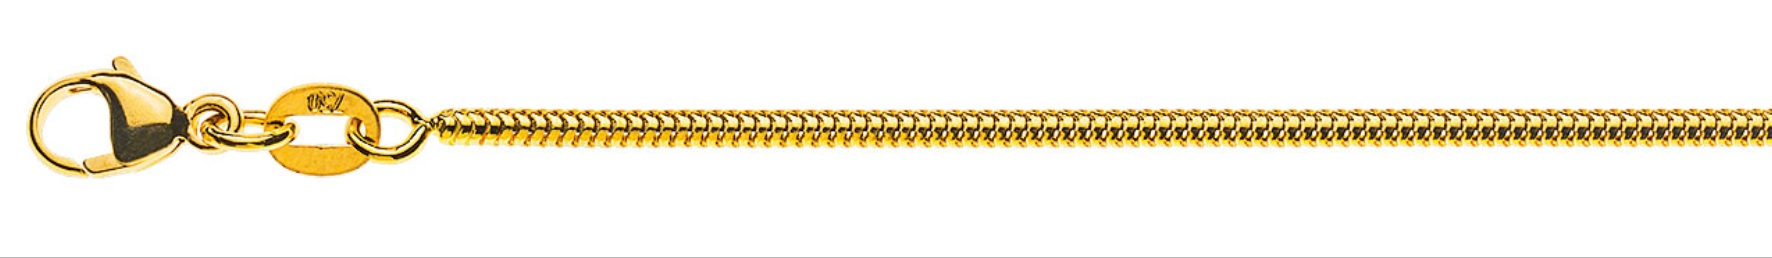 AURONOS Prestige Halskette Gelbgold 18K Schlangenkette 40cm 1.6mm